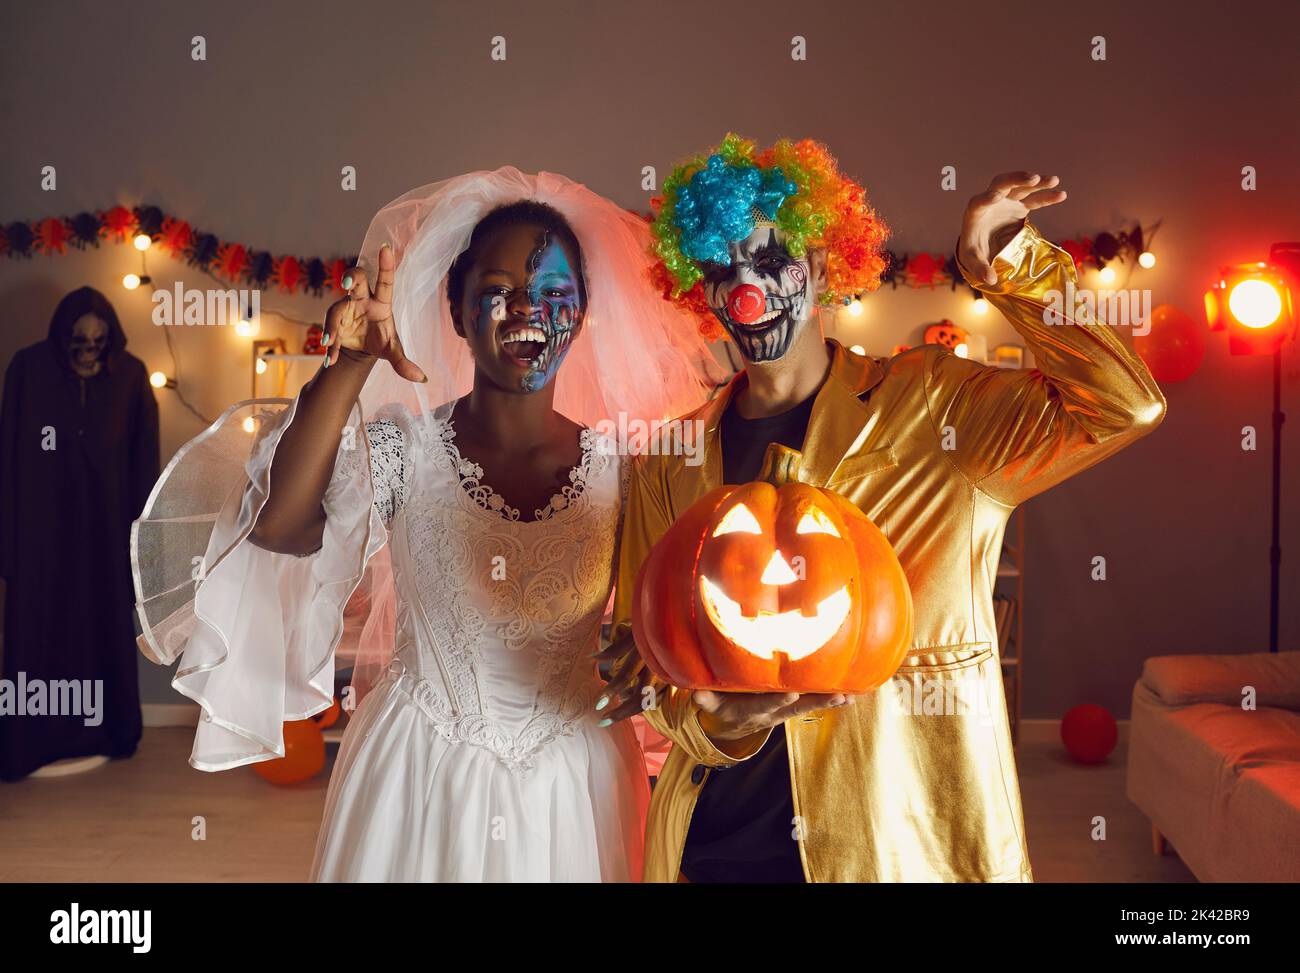 Zwei glückliche Erwachsene Freunde, die in Halloween-Kostümen von Dead Bride und Crazy Clown gekleidet sind Stockfoto